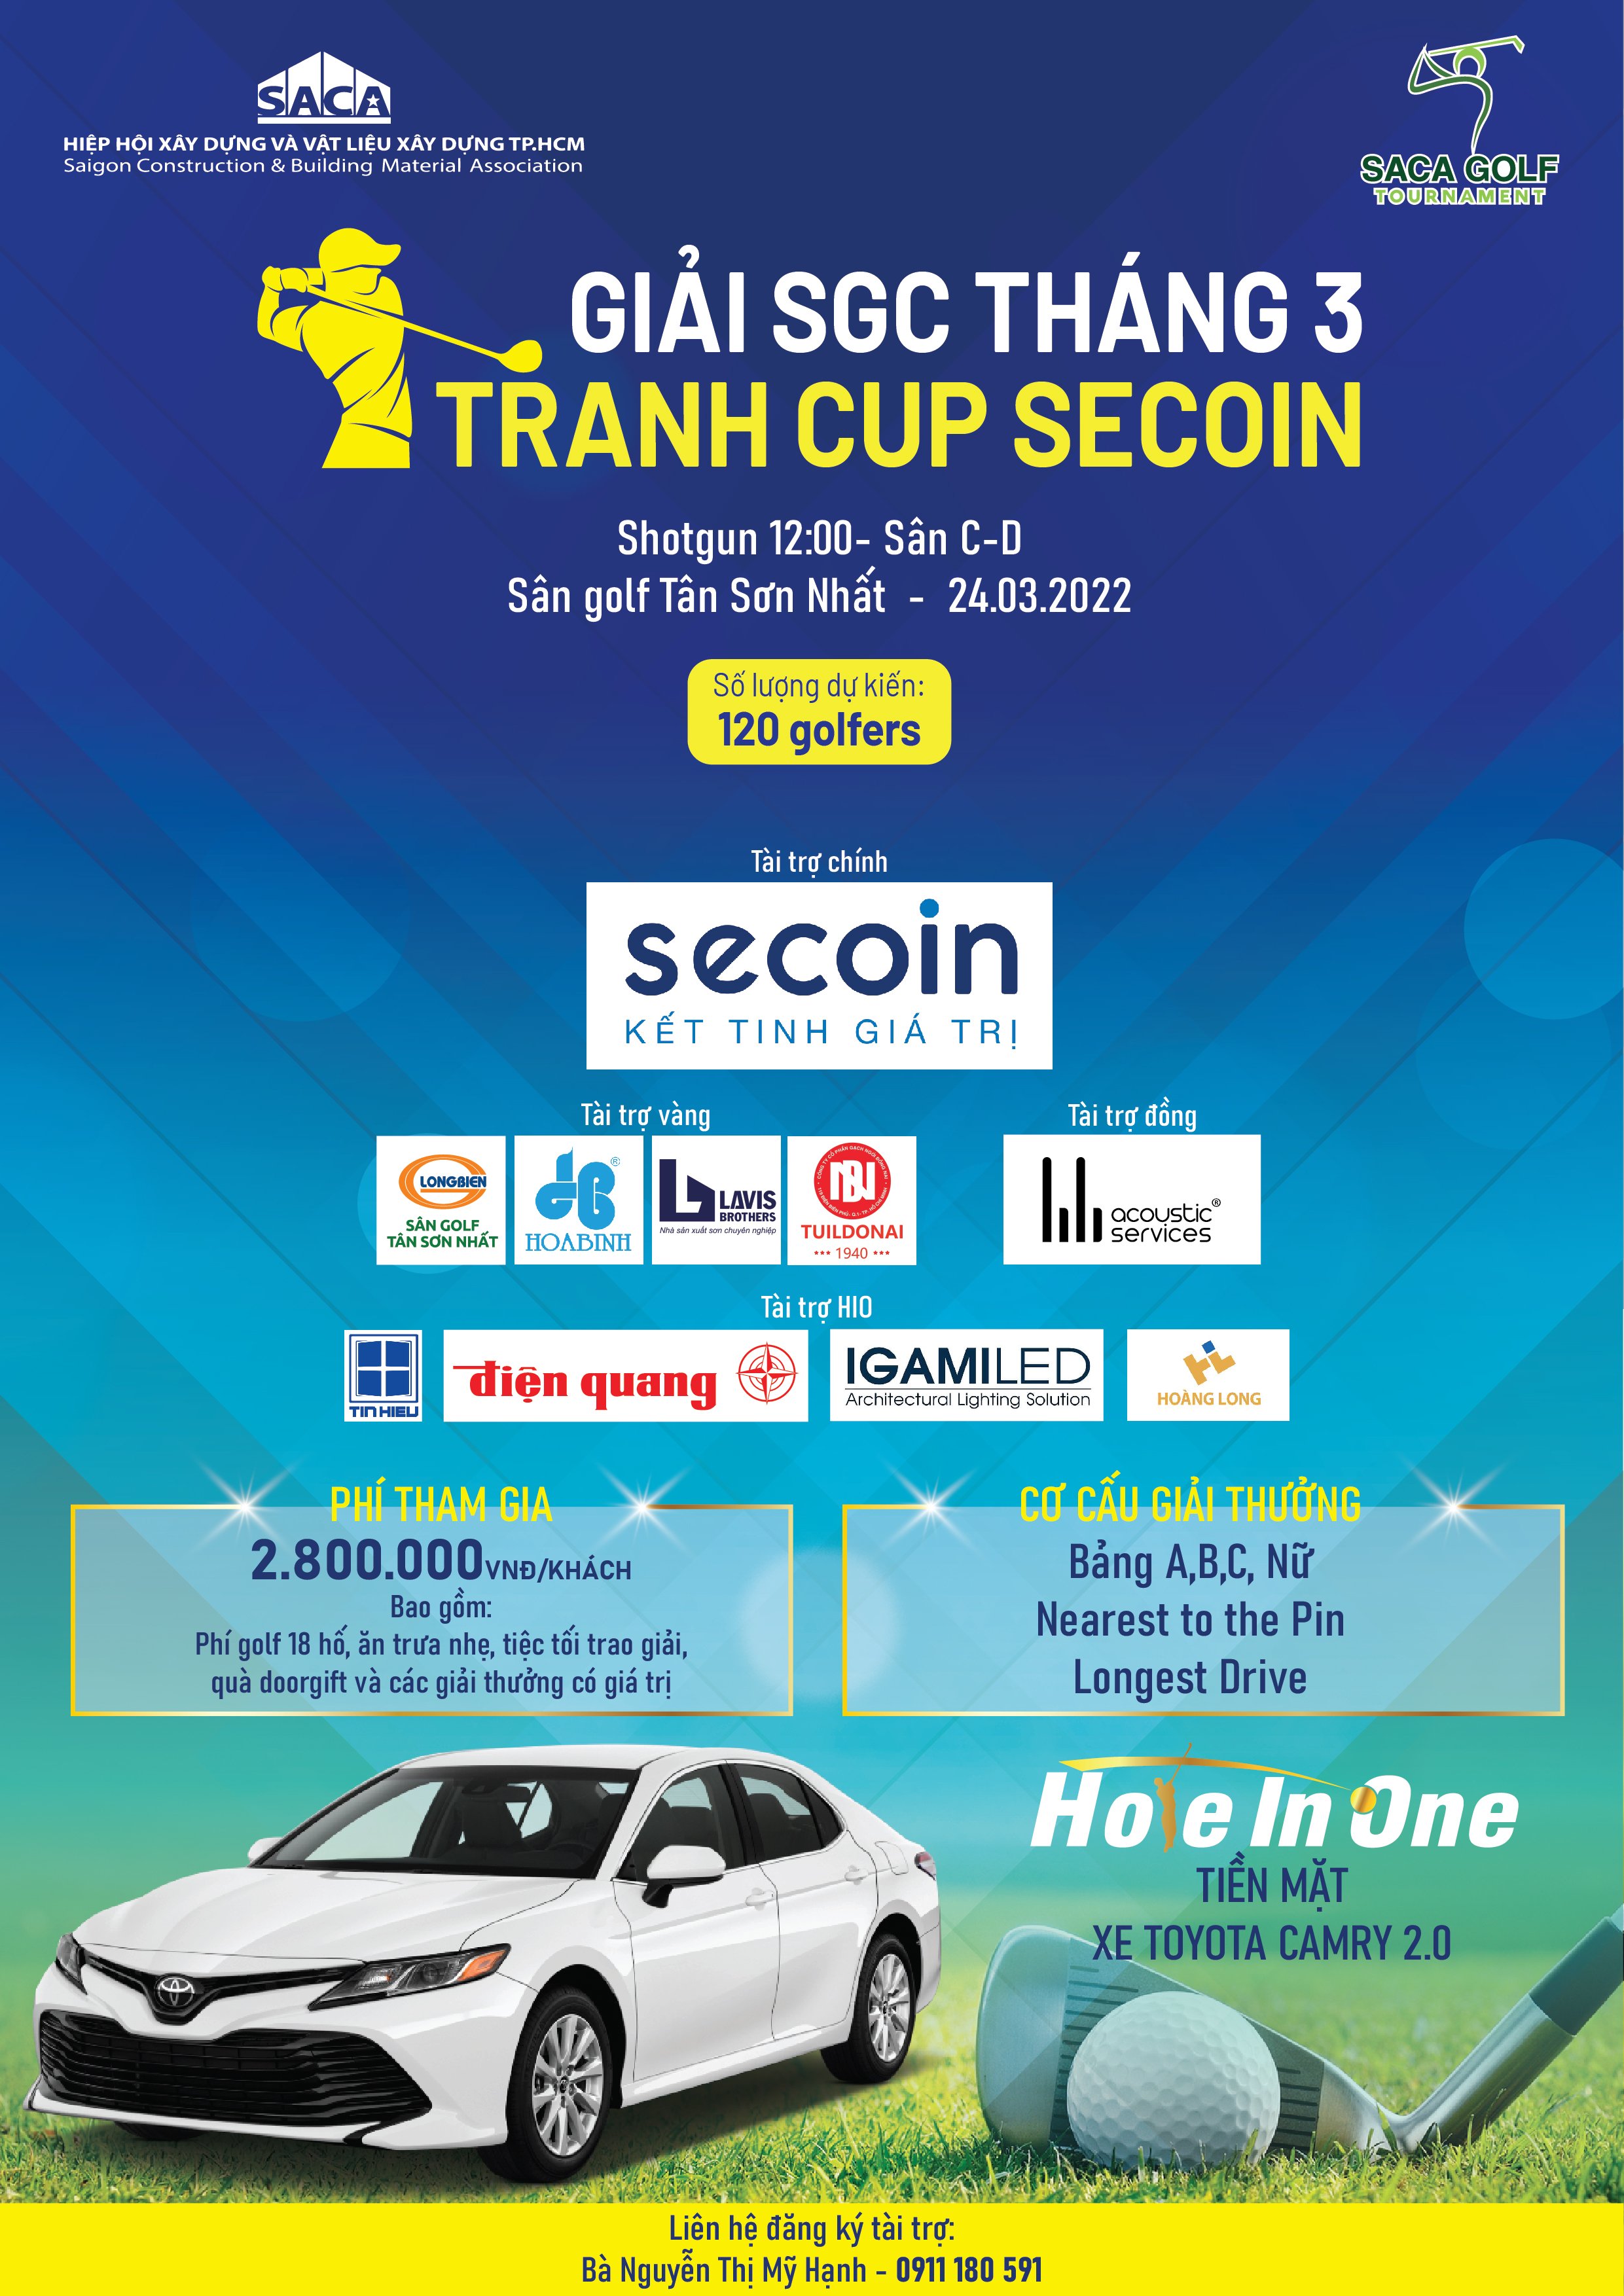 giai SGC thang 3 tranh cup Secoin